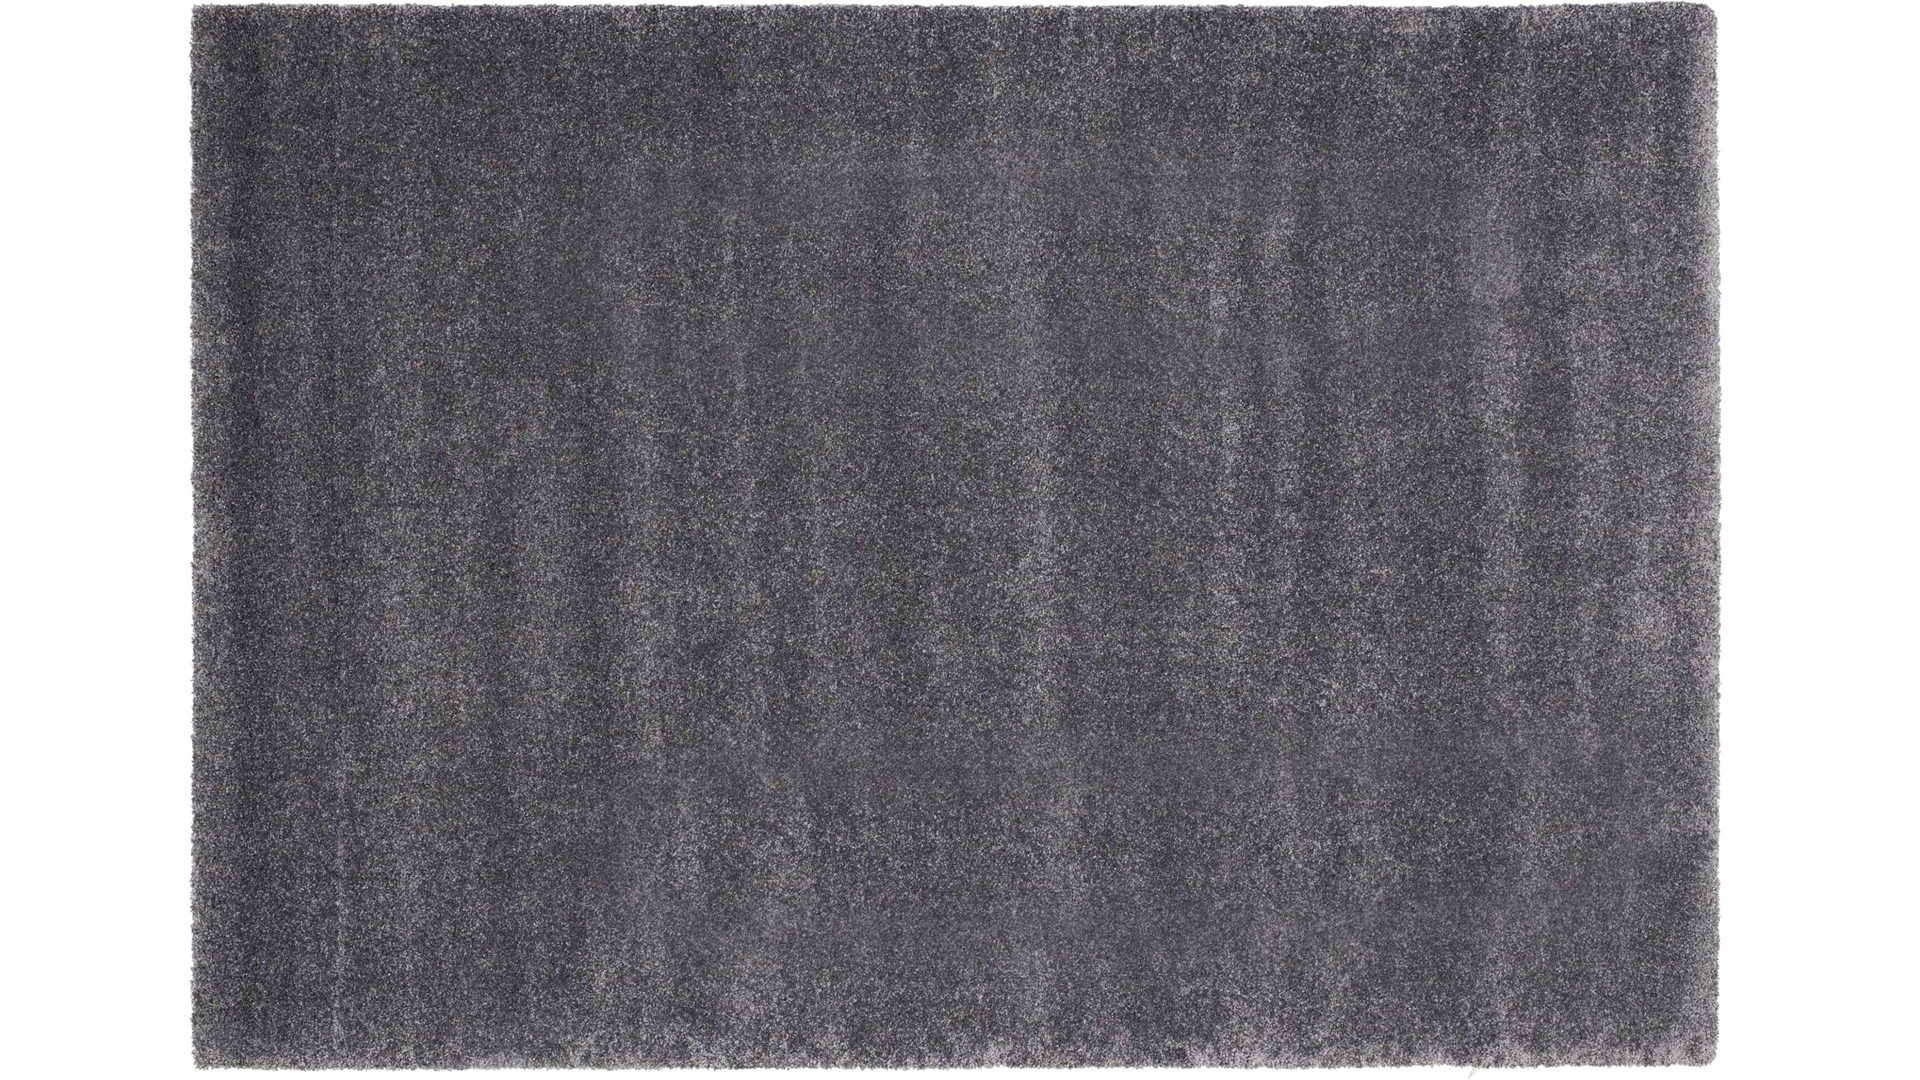 Webteppich Oci aus Kunstfaser in Grau Webteppich Bellevue für Ihre Wohnaccessoires dunkelgraue Kunstfaser – ca. 140 x 200 cm